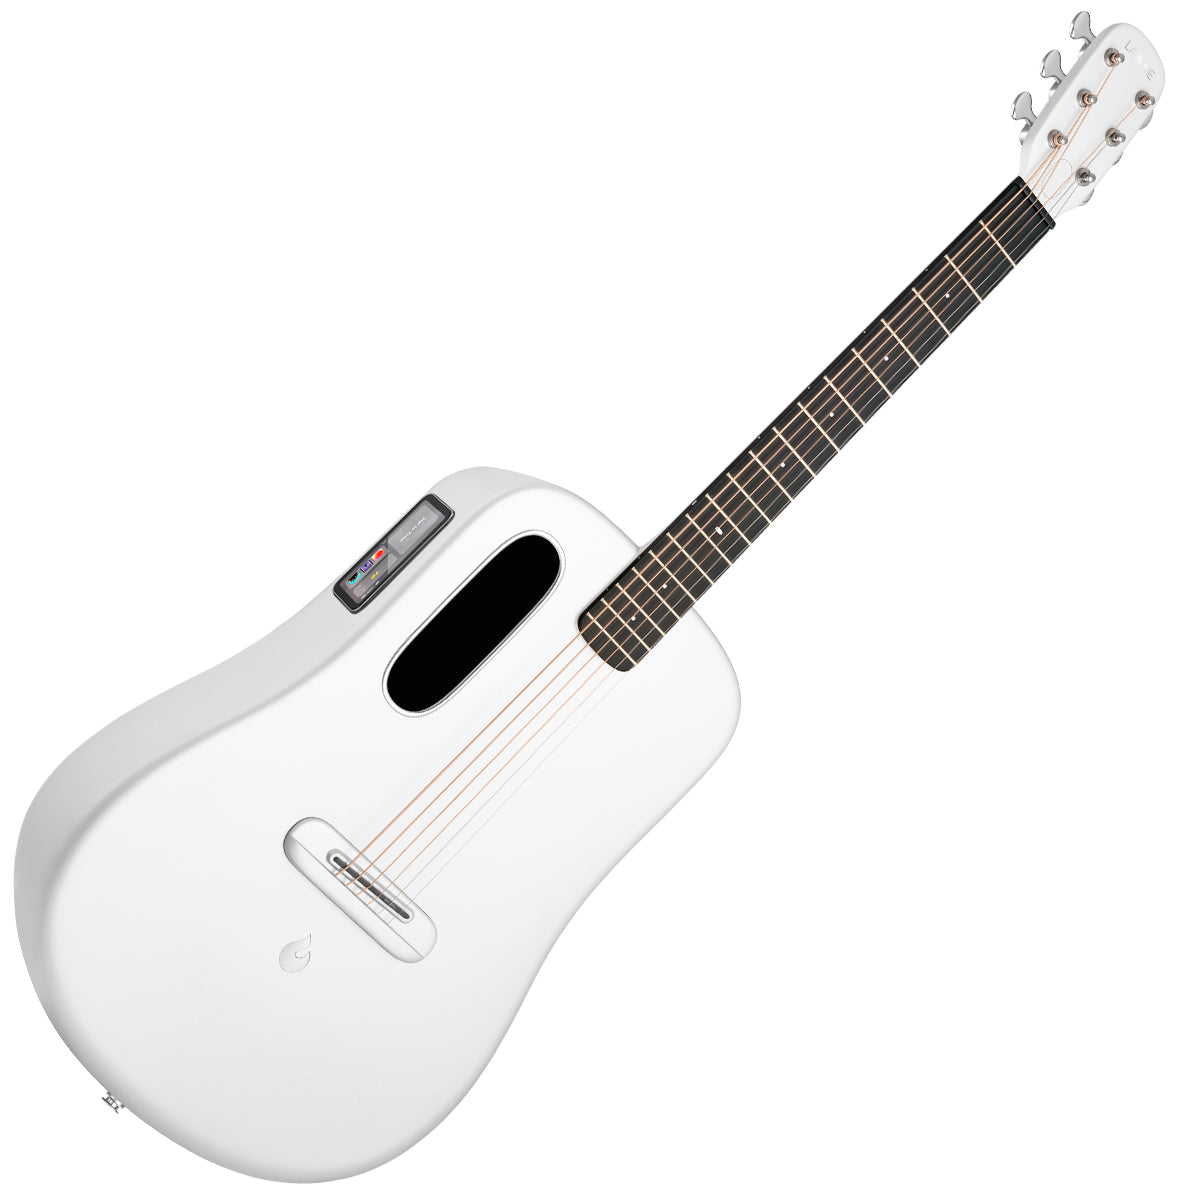 Lava ME 4 Carbon Guitar White